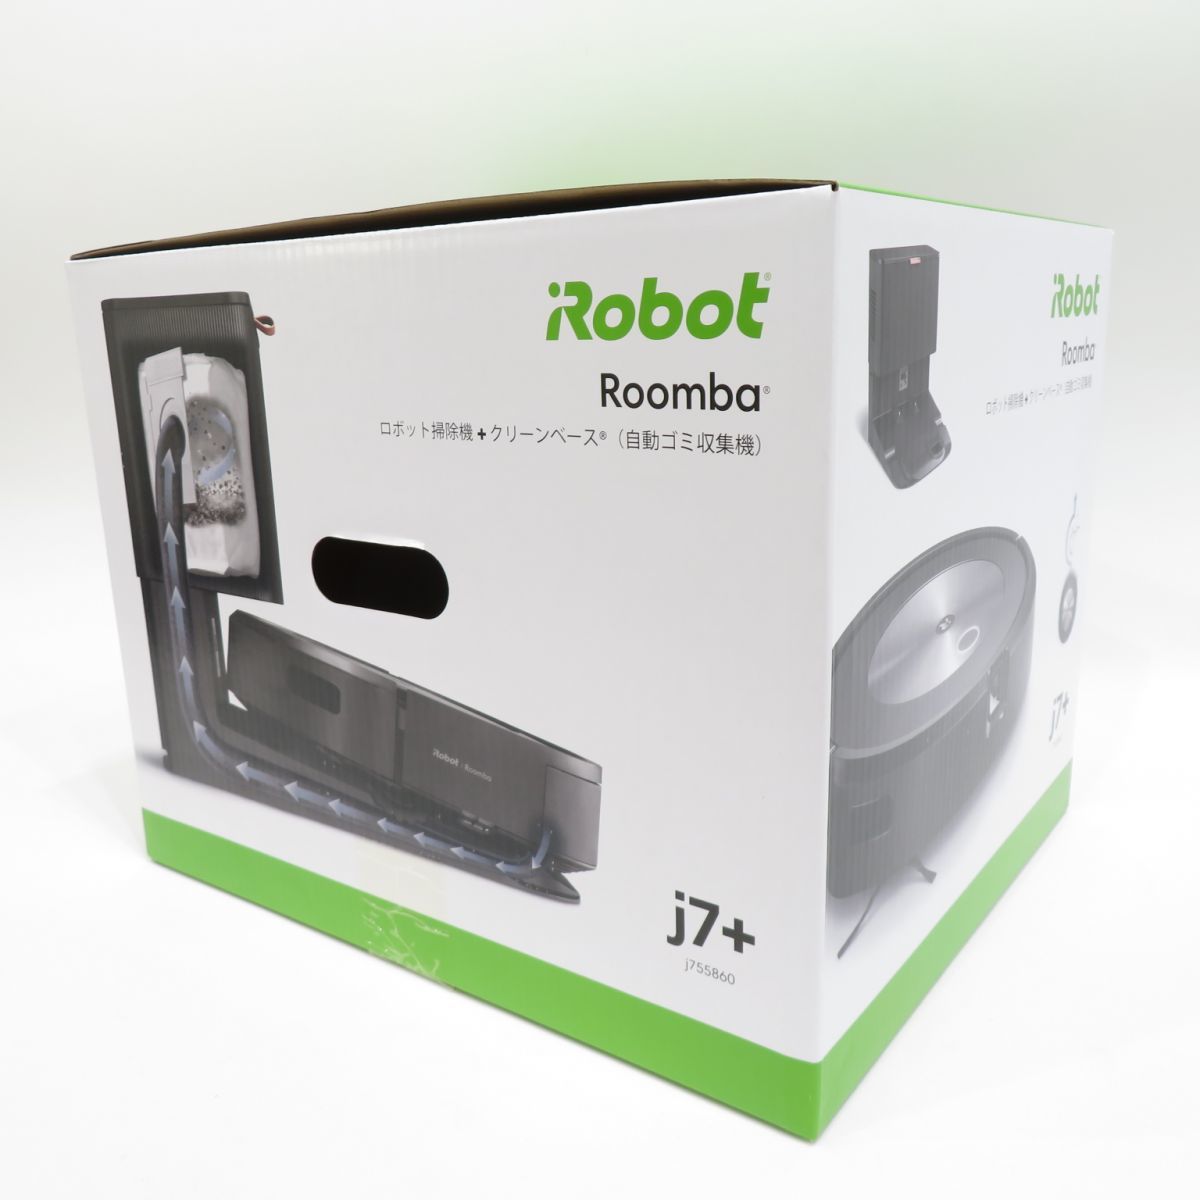 106 【未開封】IROBOT アイロボット ルンバ J7+ j755860 ロボット掃除機_画像3